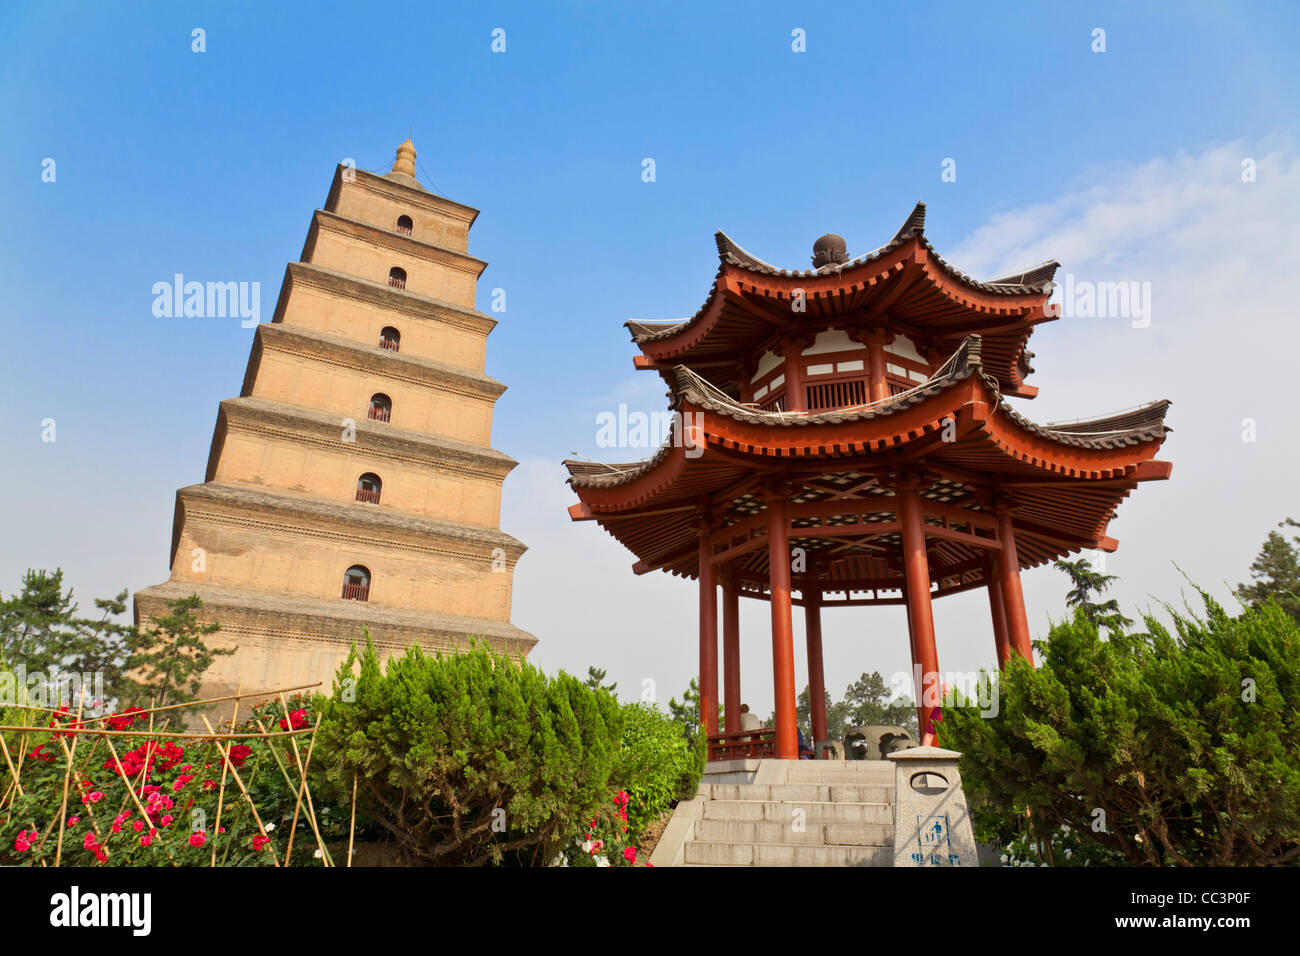 China, Shaanxi, Xi'an, Big Goose Pagoda Stock Photo